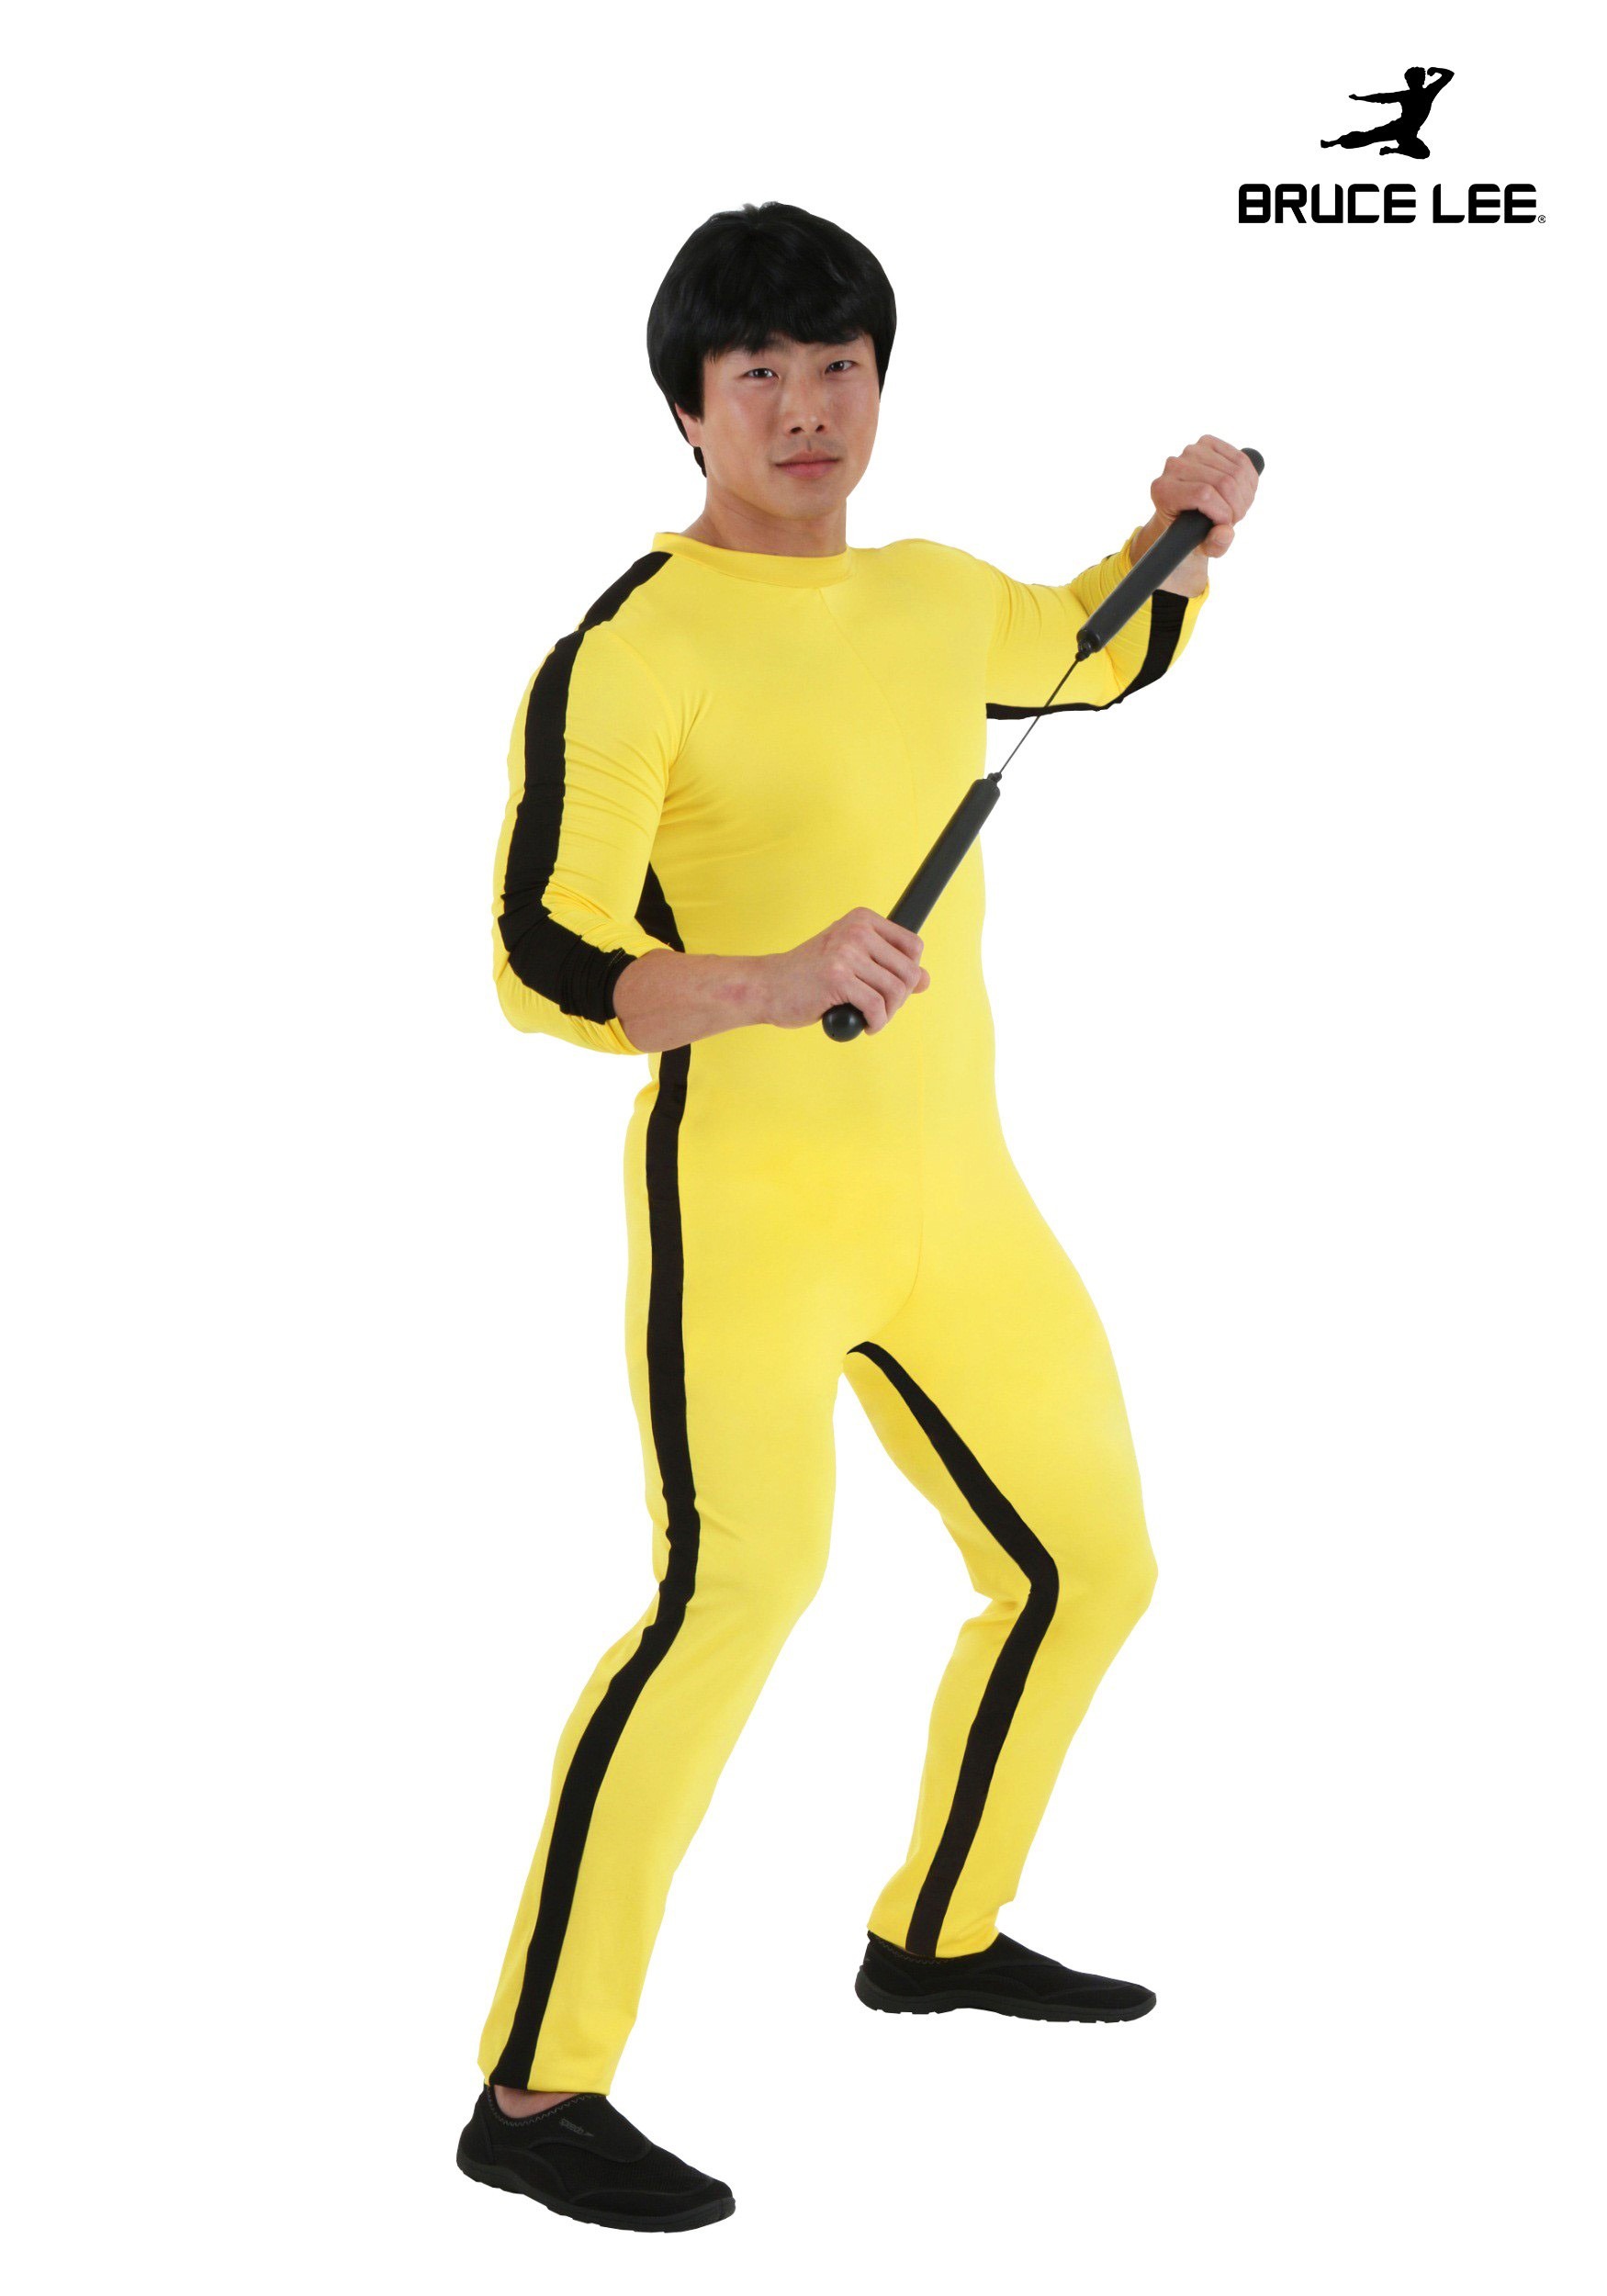 Men's Bruce Lee Costume